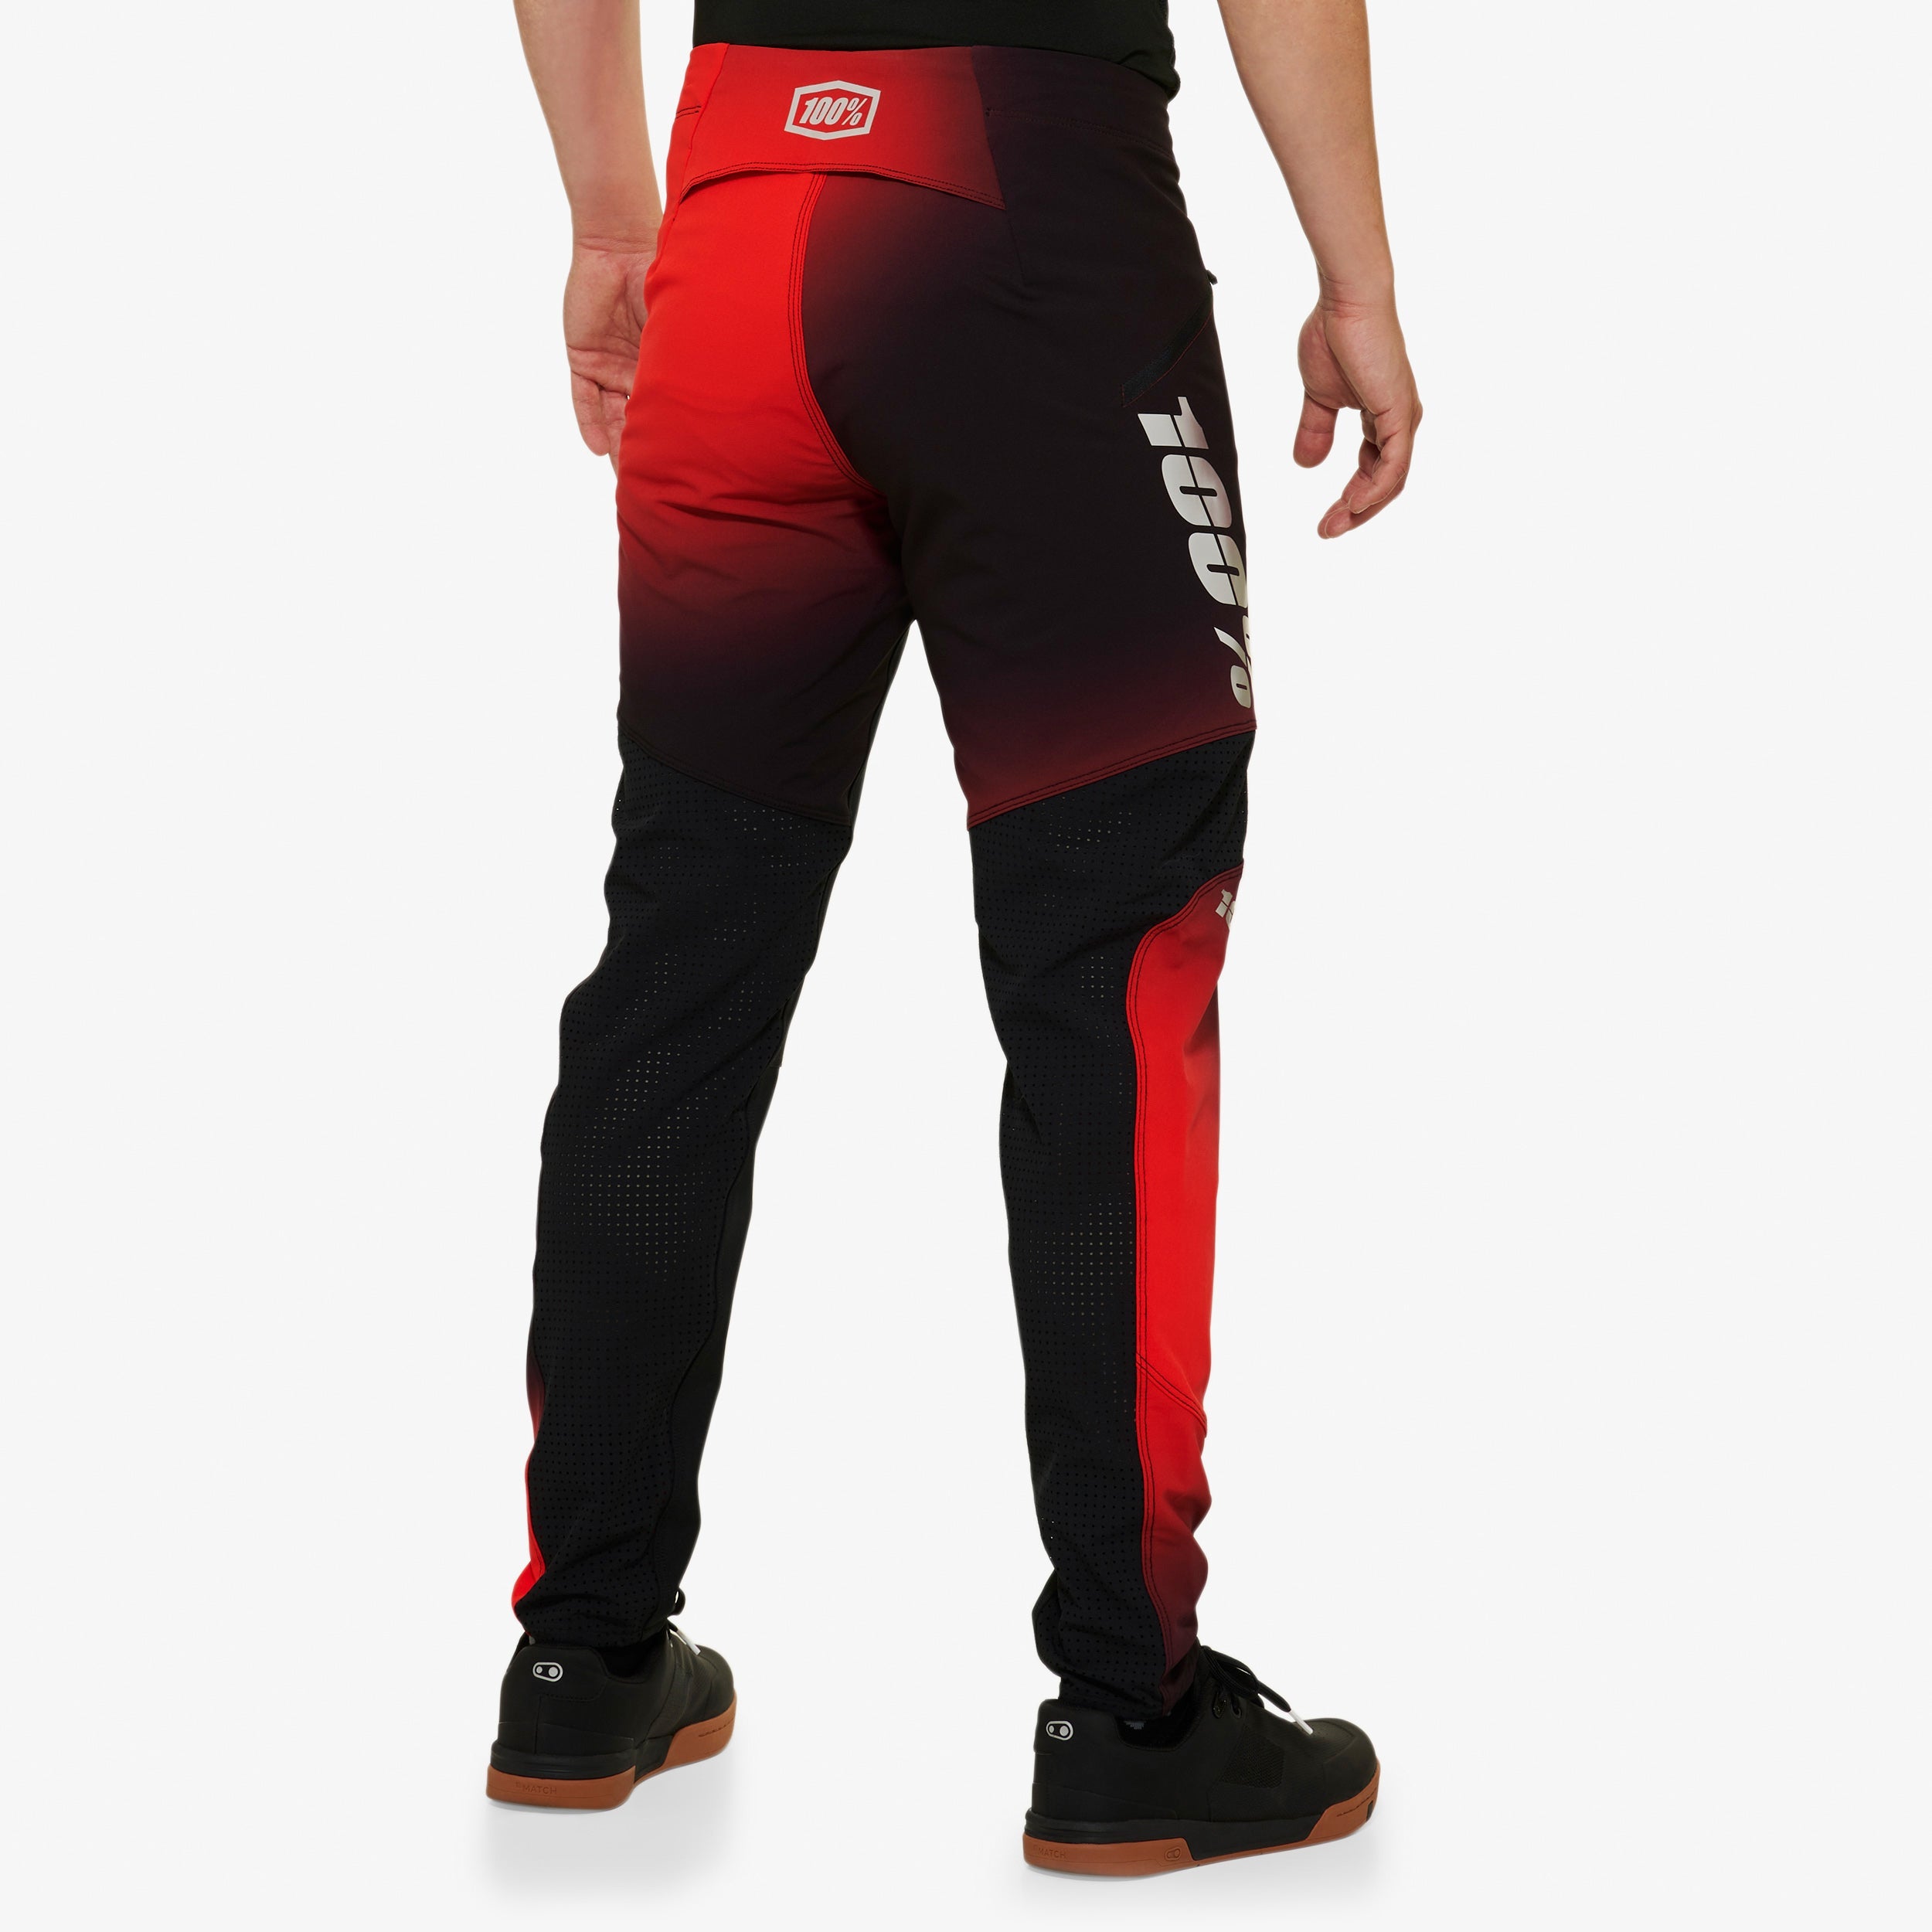 R-CORE X LE Pants Black/Red